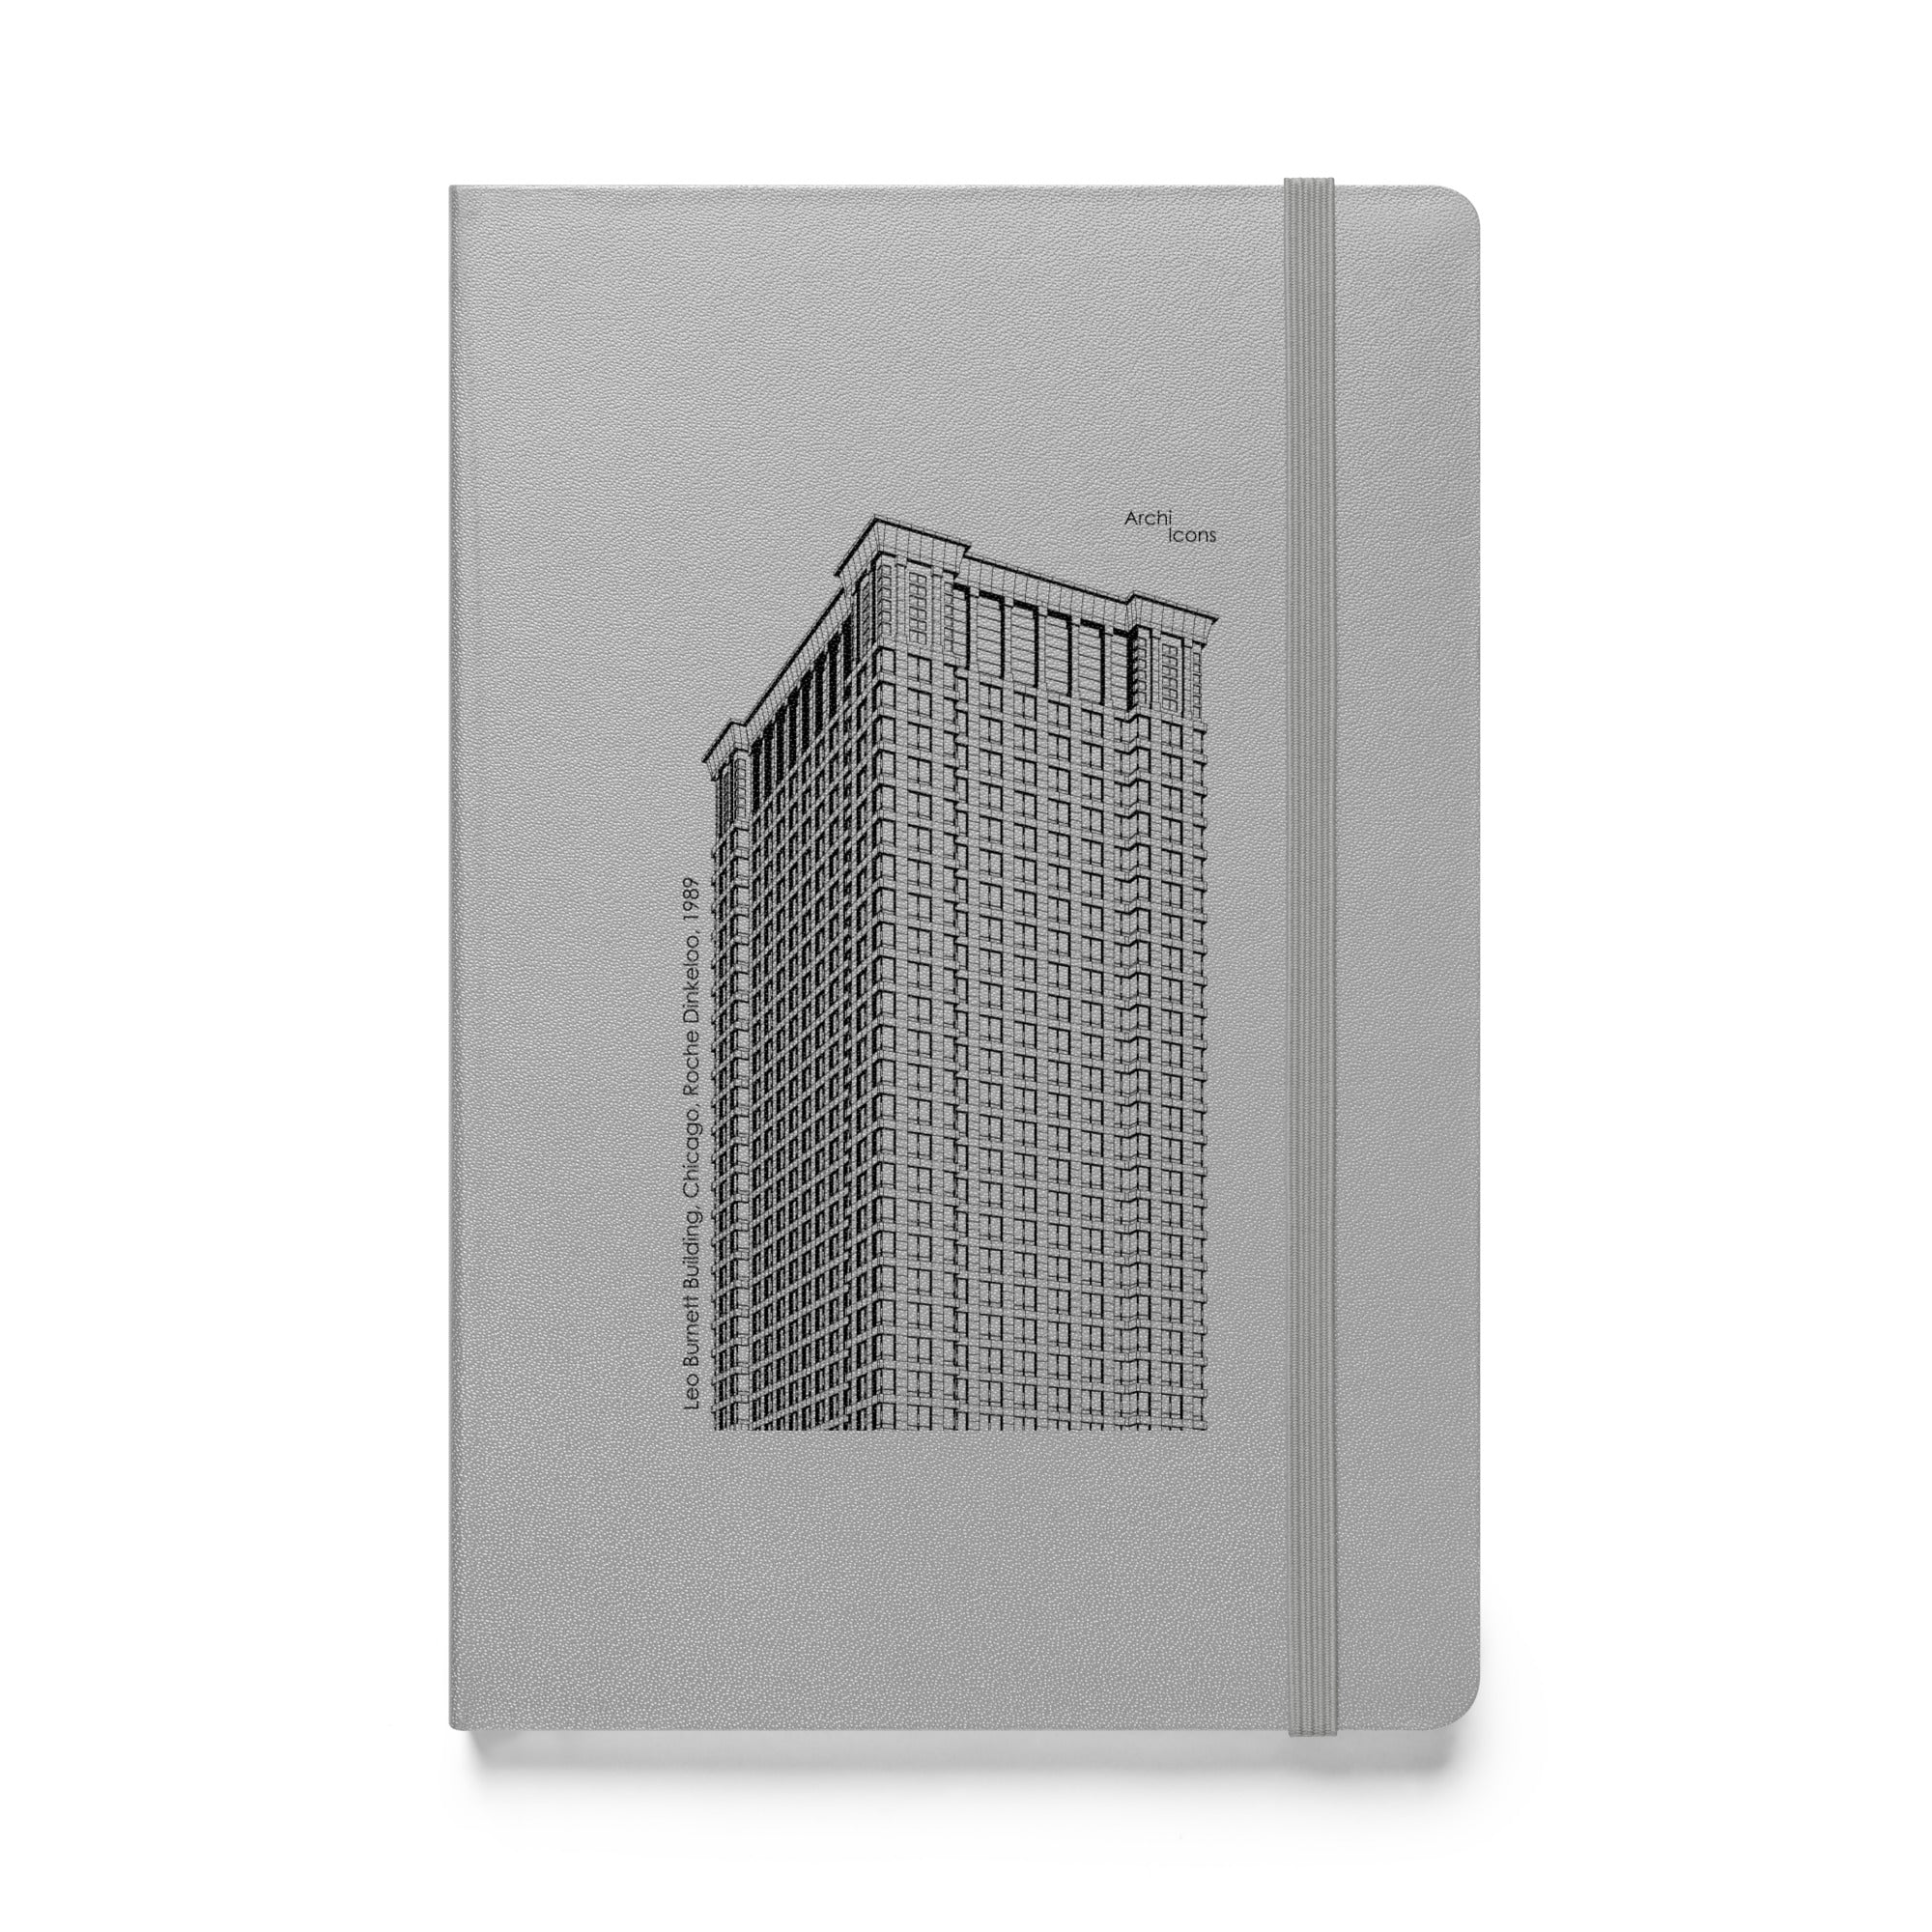 Leo Burnett Building Hardcover Notebook